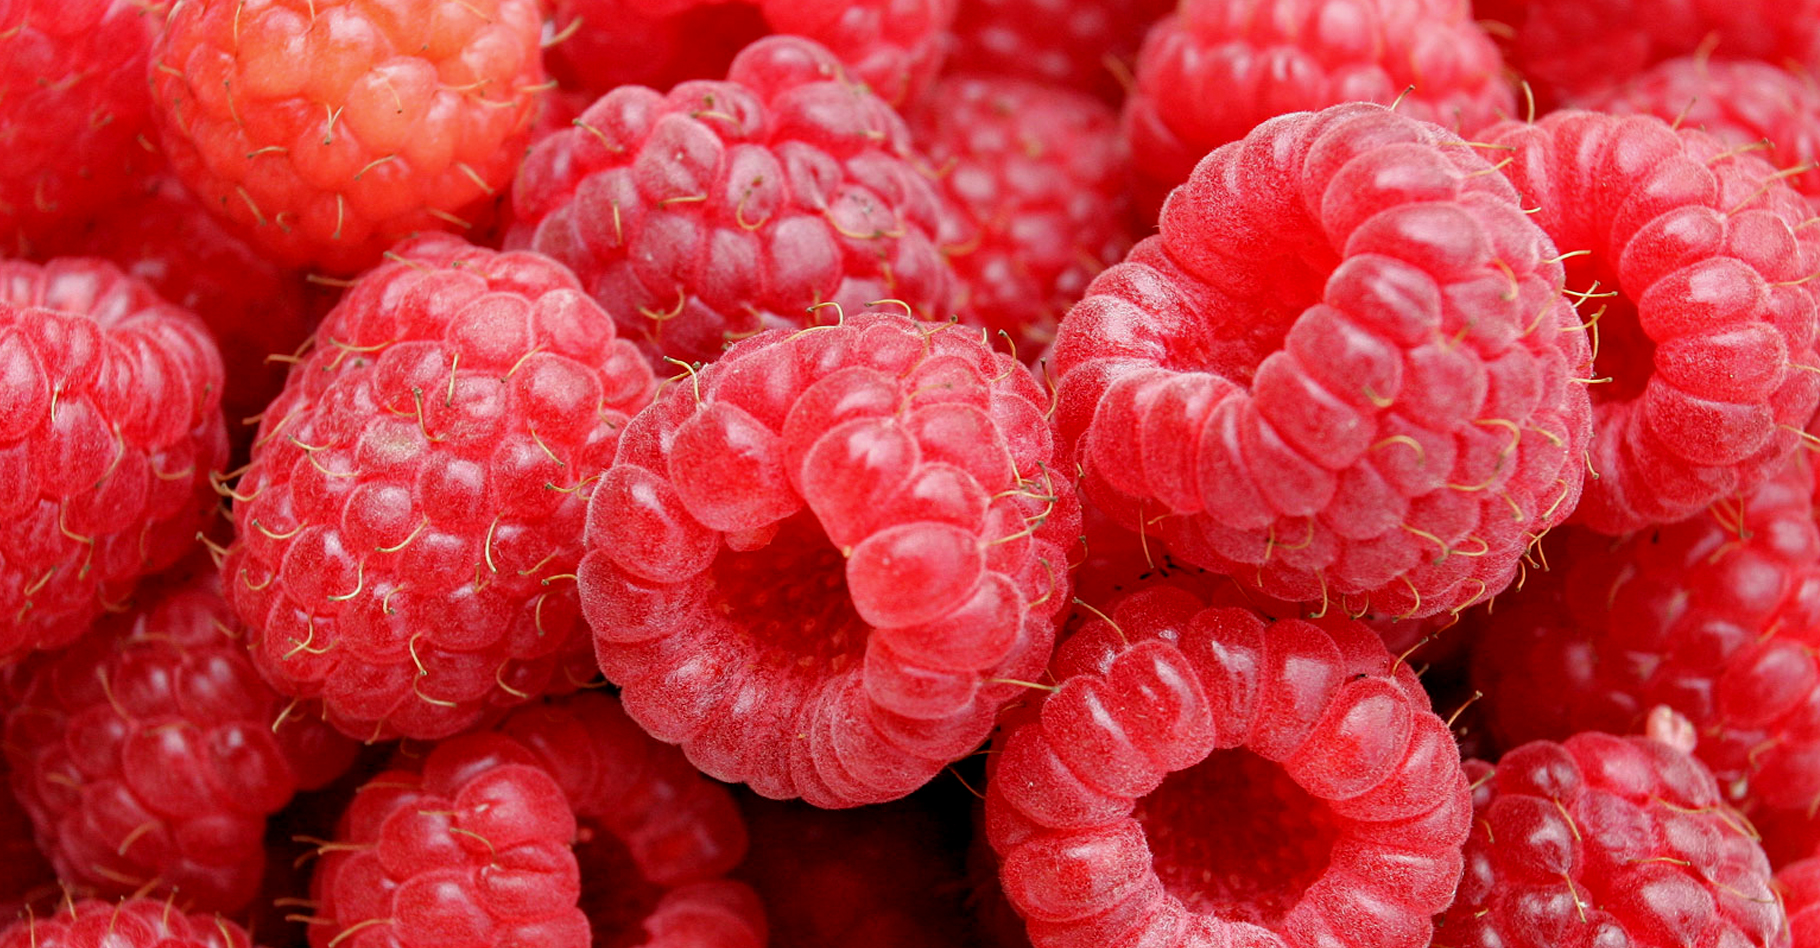 Les framboises sont des petits fruits rouges peu sucrés.&nbsp;© Fir0002, CC by-nc 2.0